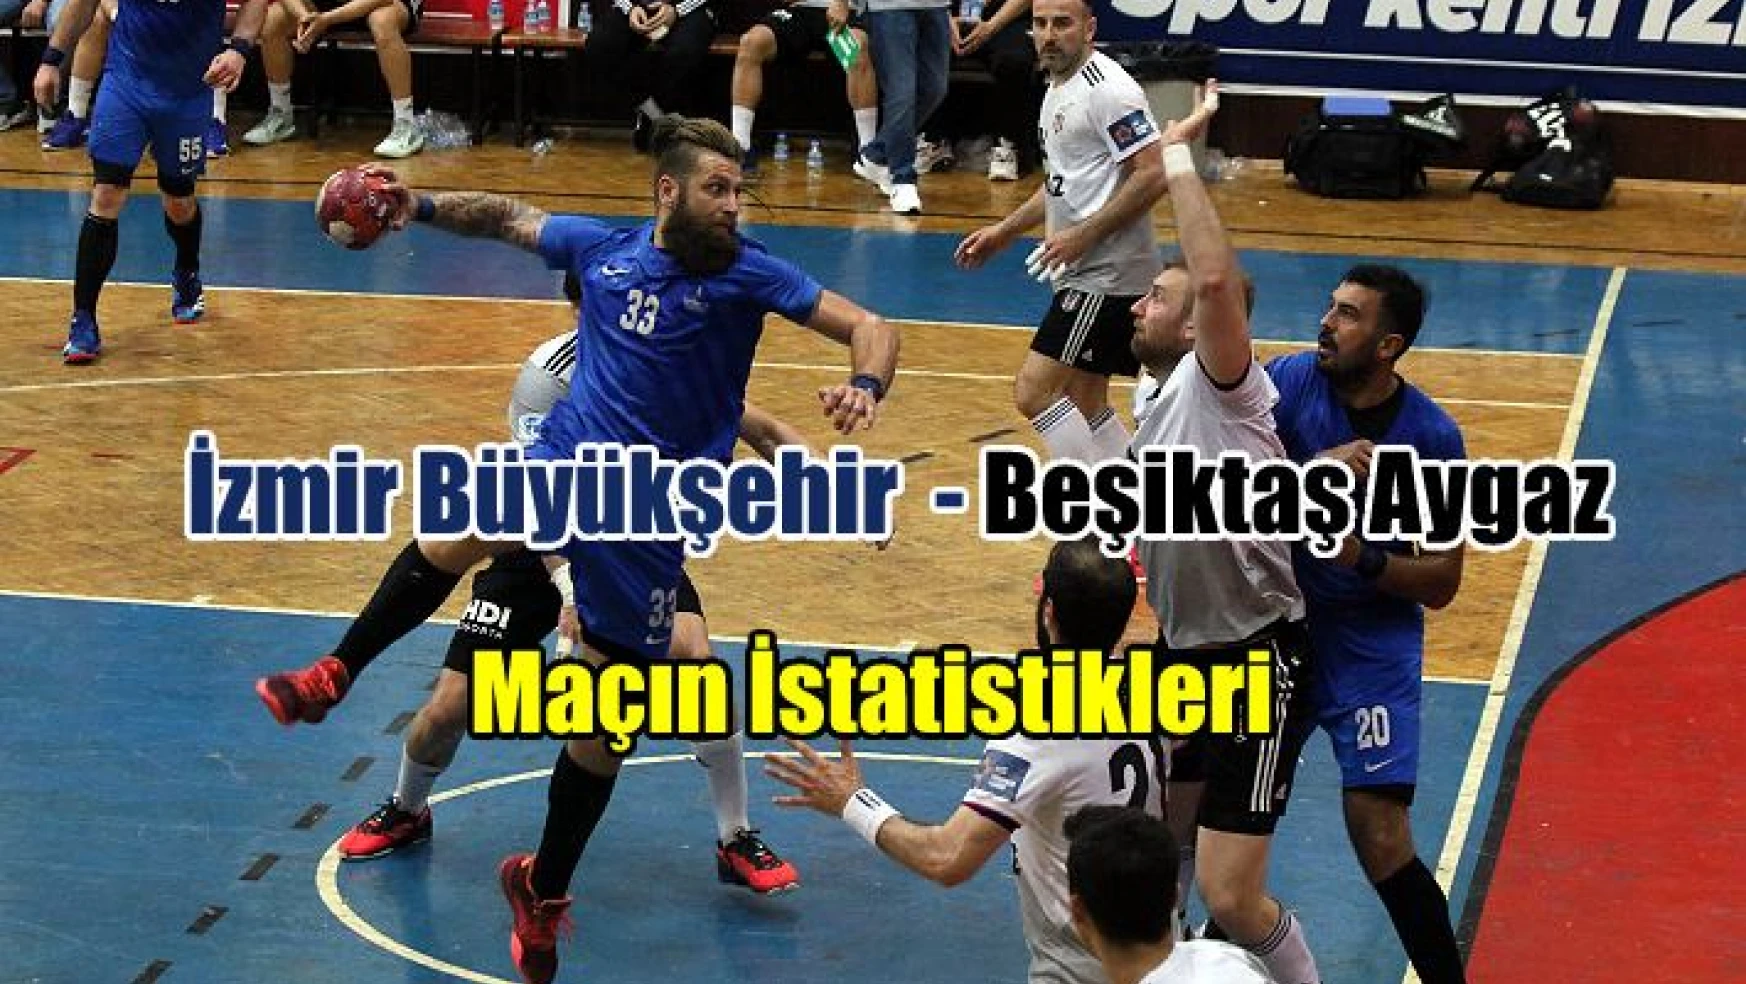 İzmir Büyükşehir – Beşiktaş Aygaz maçının istatistikleri